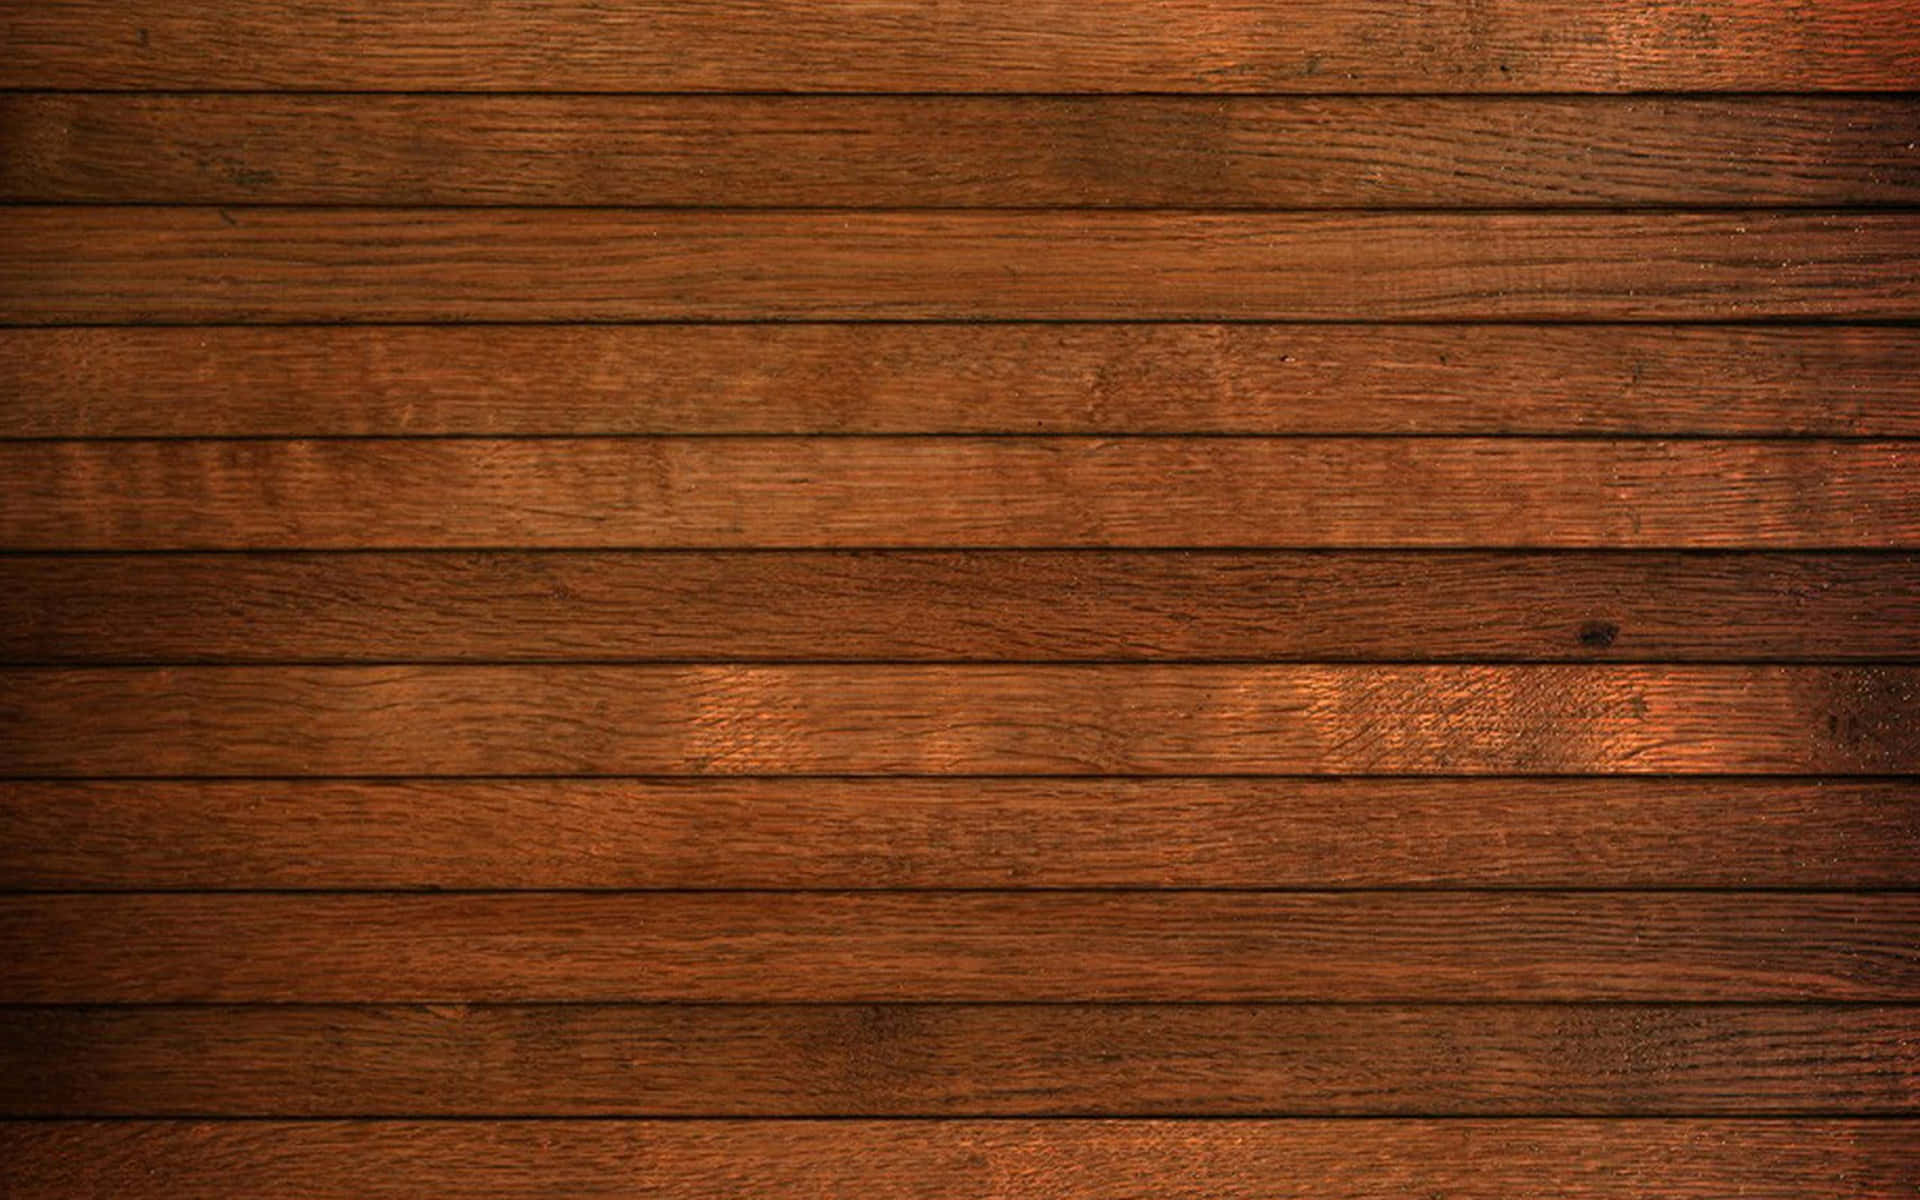 Glatteplanken Mit Holzmaserung Hintergrund-textur